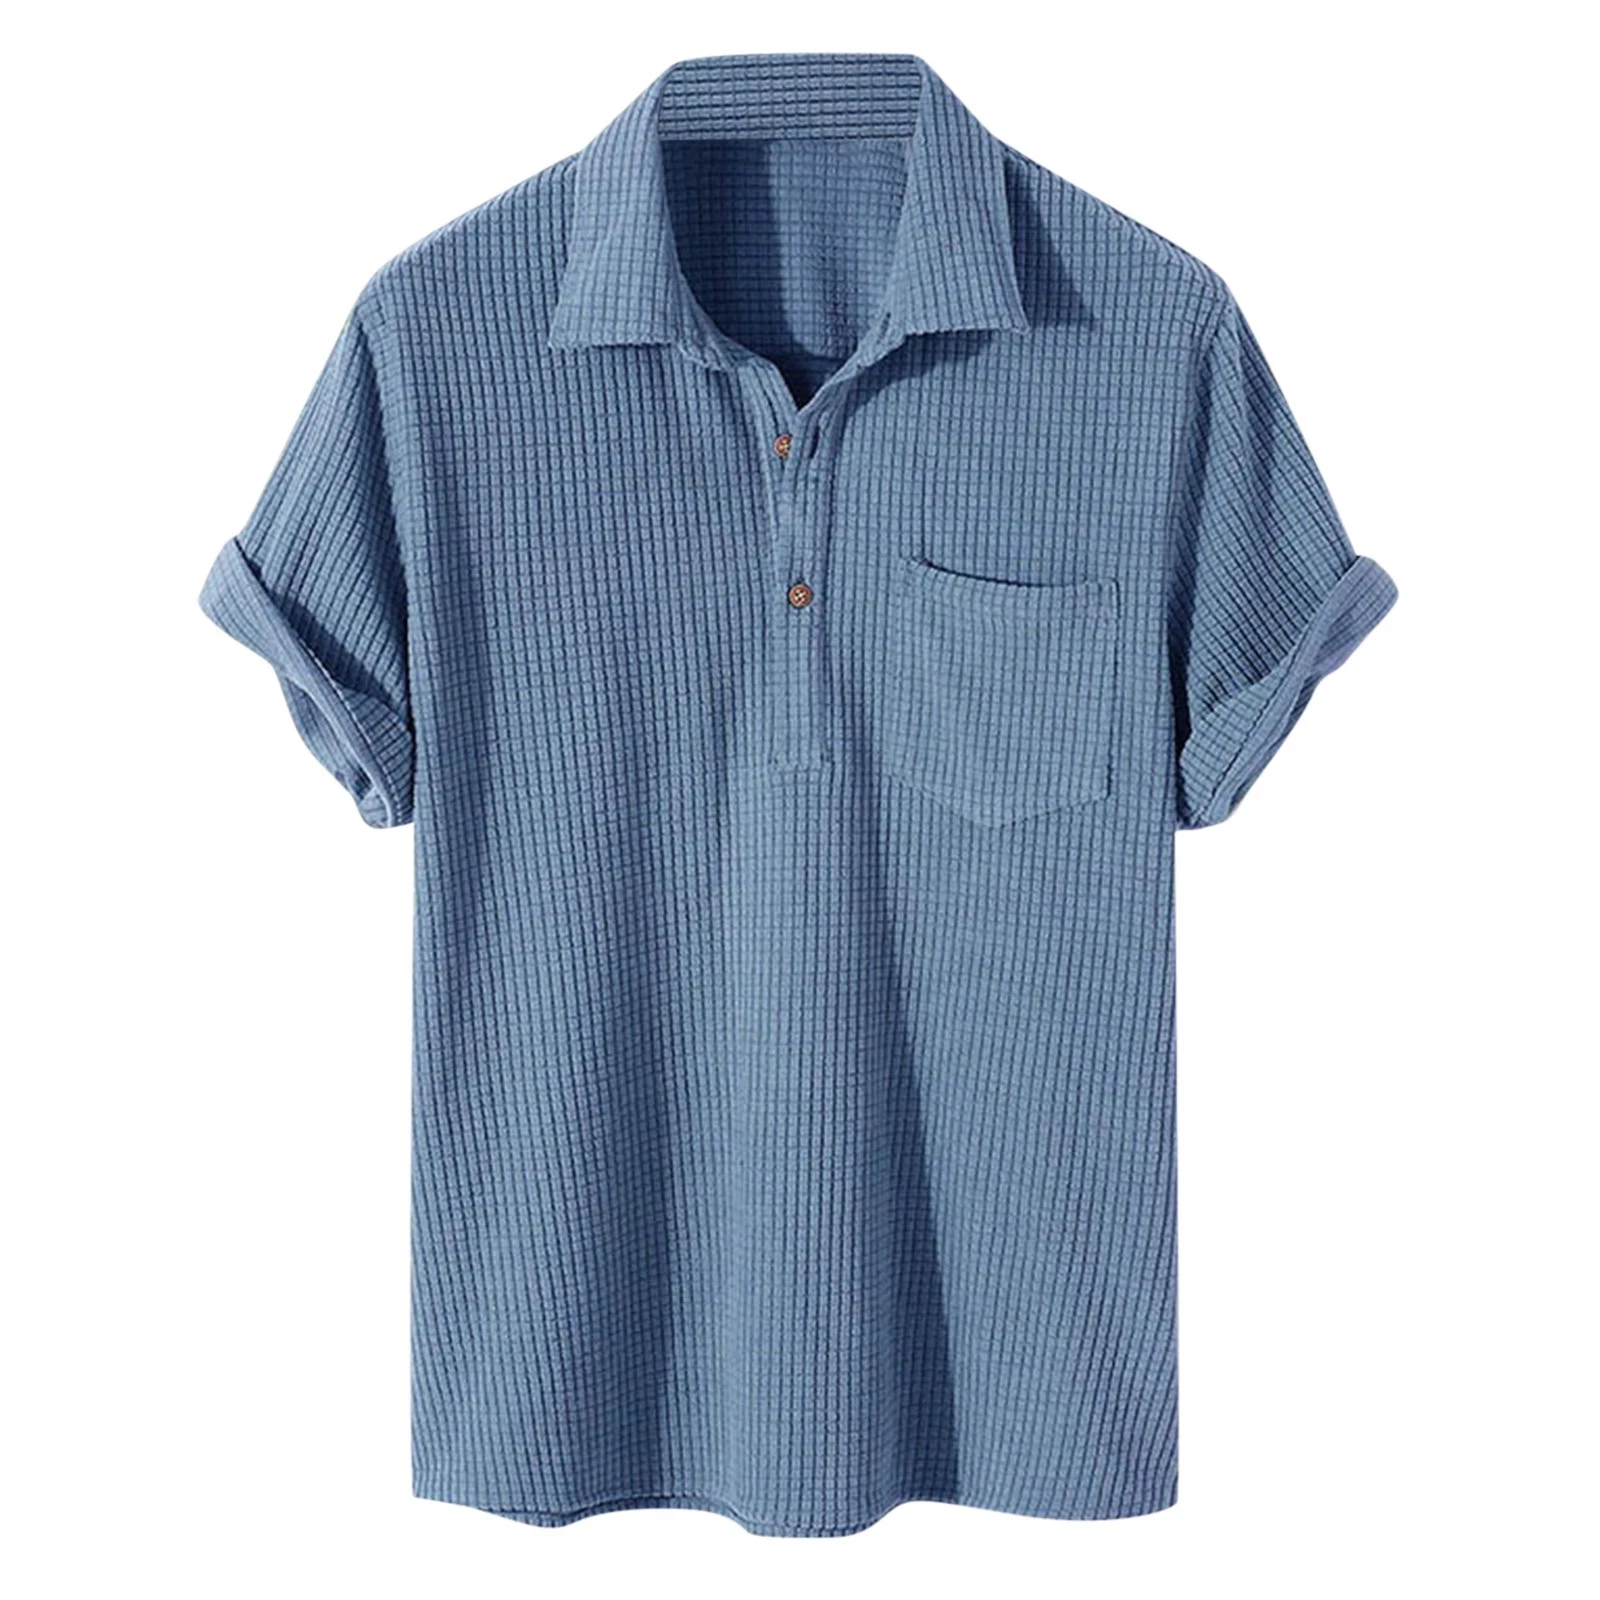 

Branded Men's Clothing Casual Solid Summer Hawaiian Shirt Man Cardigan Lapel Social Dress Shirts Men Pocket Short Sleeve Tops